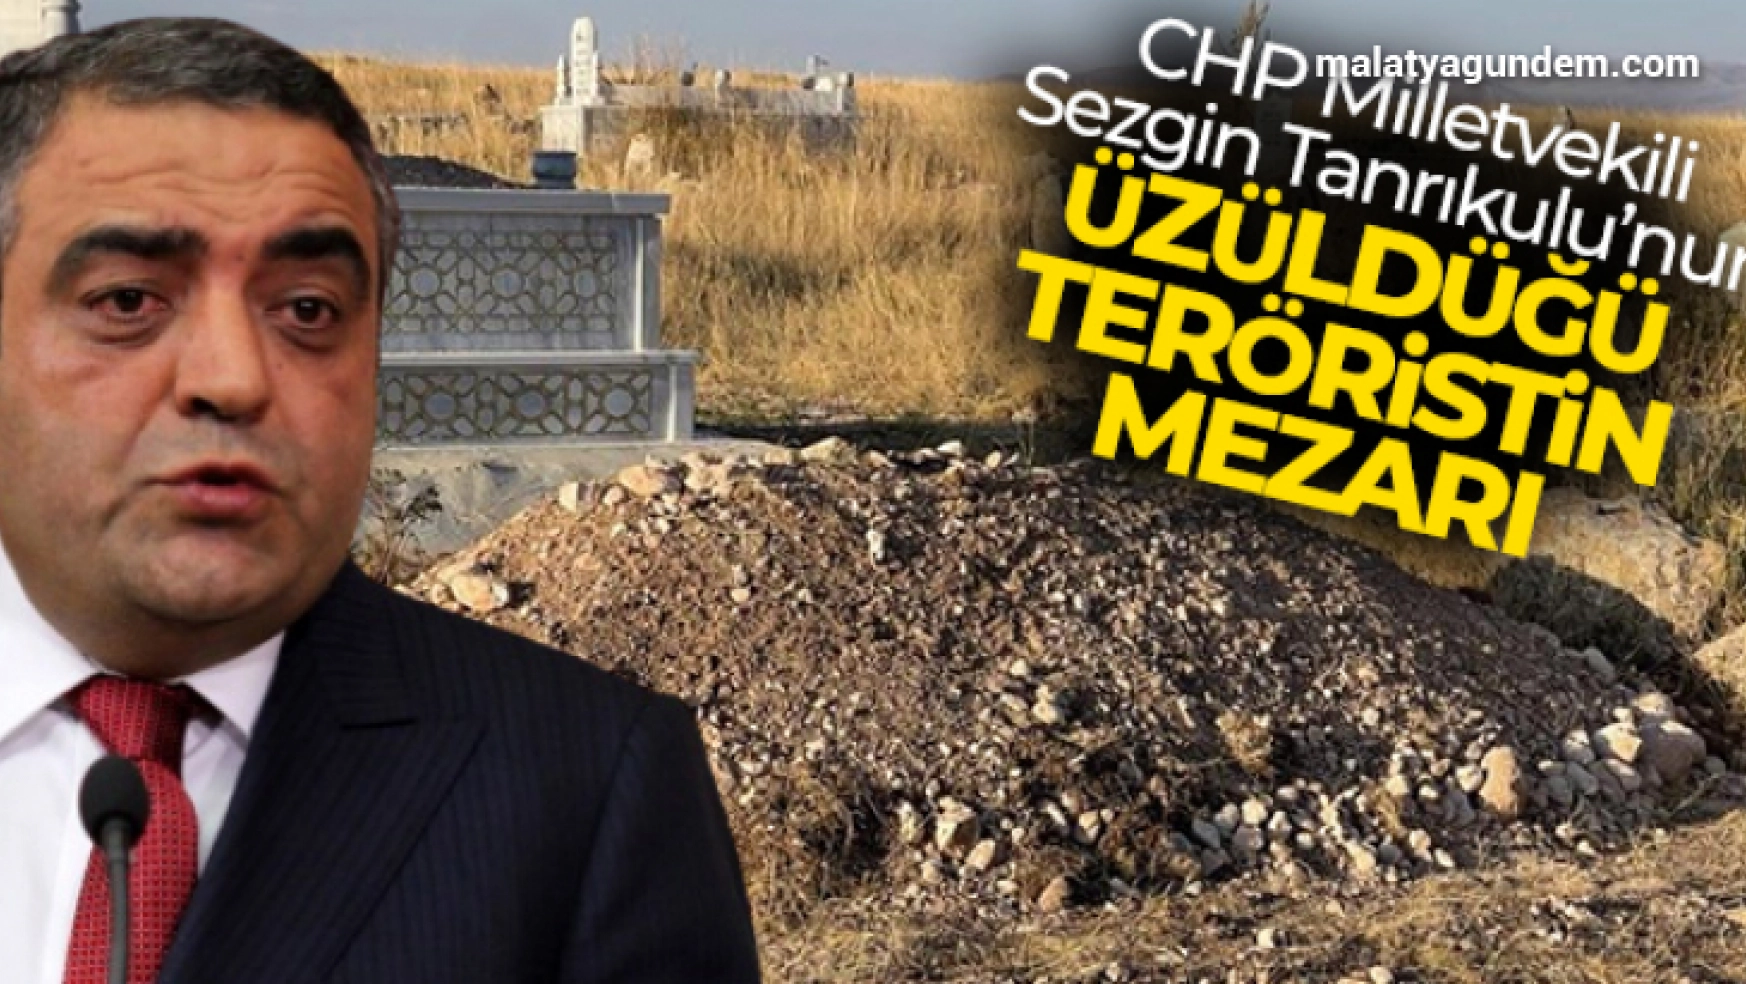 CHP Milletvekili Sezgin Tanrıkulu'nun üzüldüğü teröristin mezarı